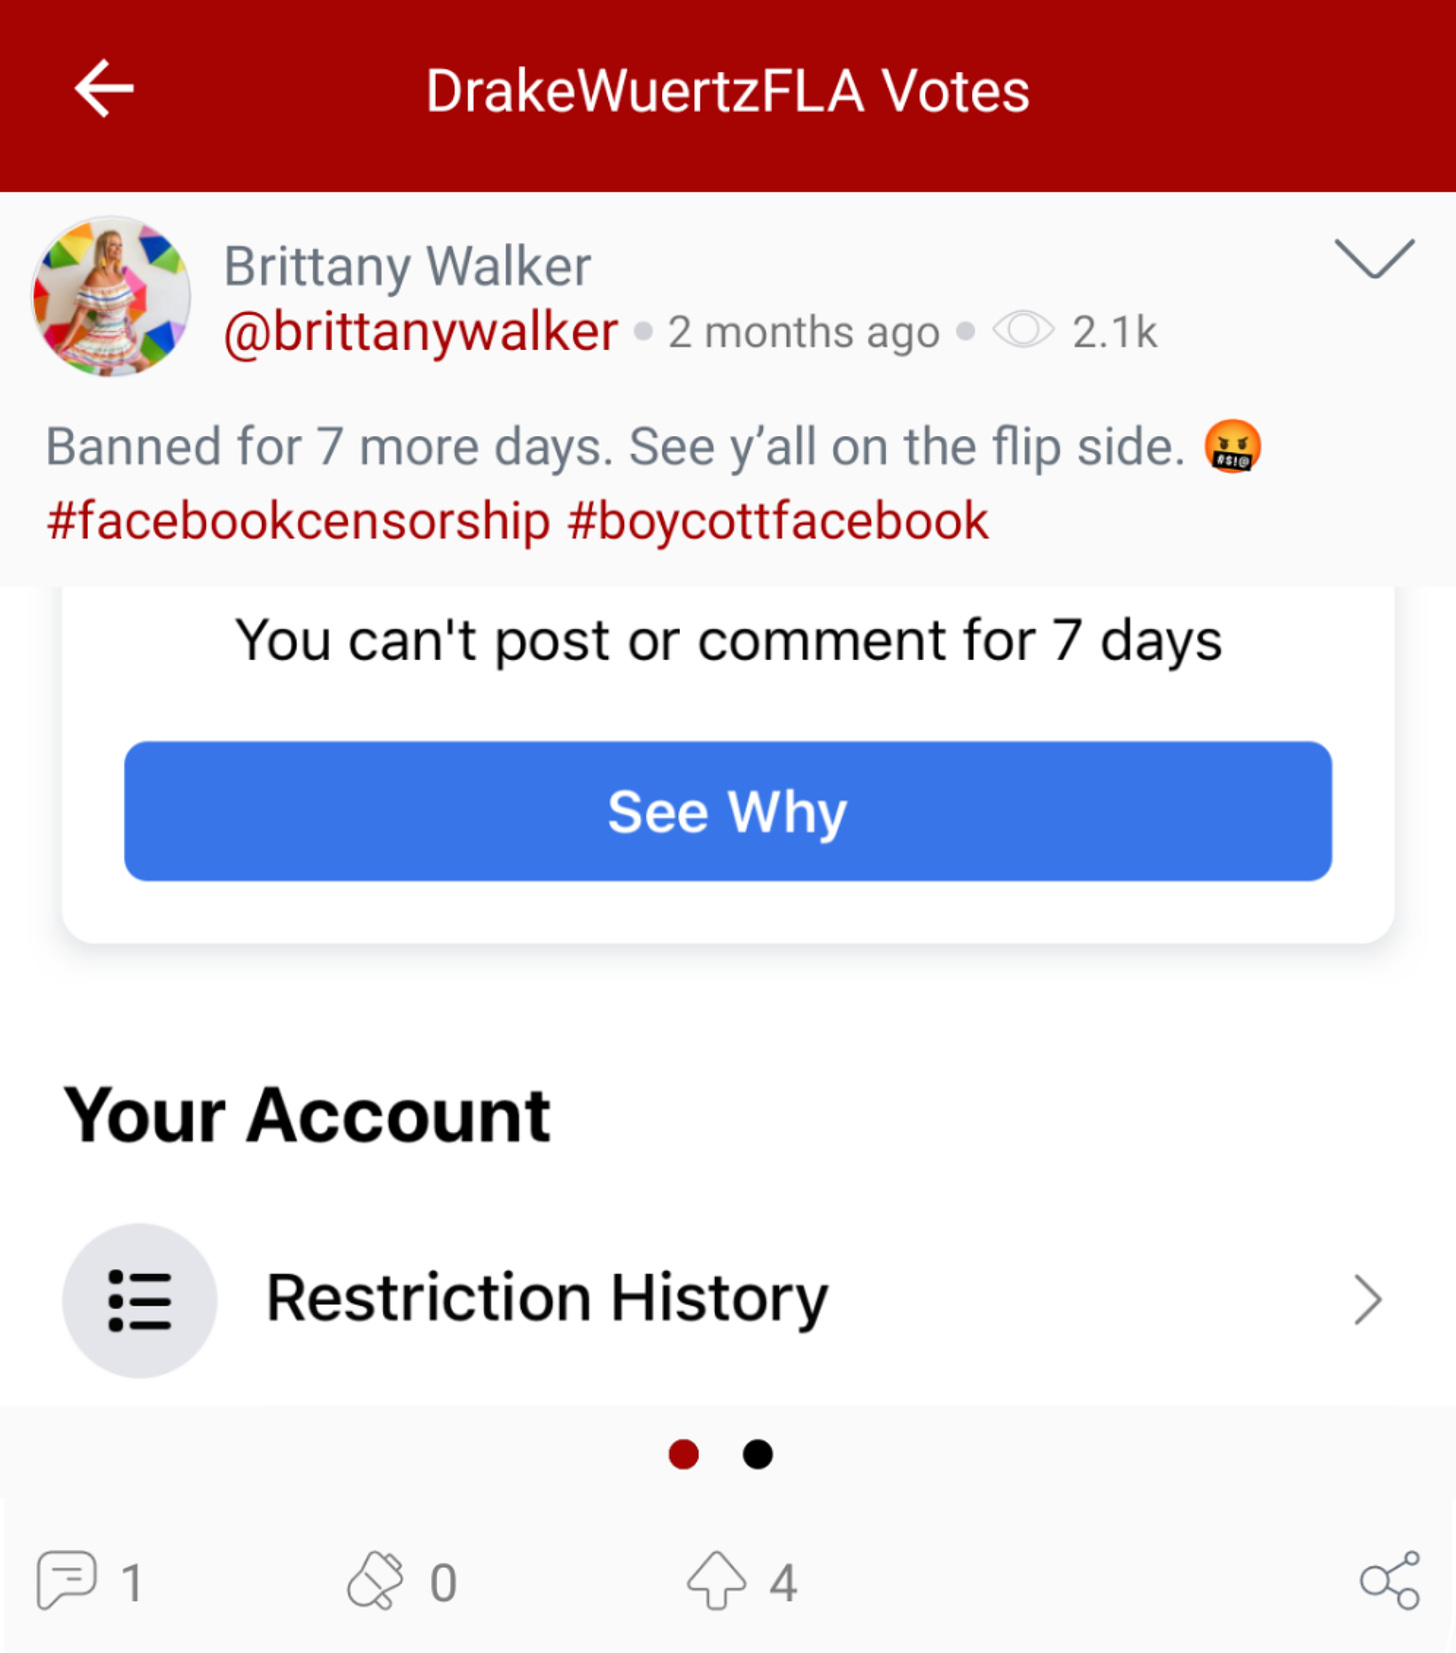 Drake Wuertz “votes” Brittany Walker complaining about her Facebook suspension. (Image: Parler screenshot.)@DrakeWuertzFLA “votes” Brittany Walker complaining about her Facebook suspension. (Image: Parler screenshot.)